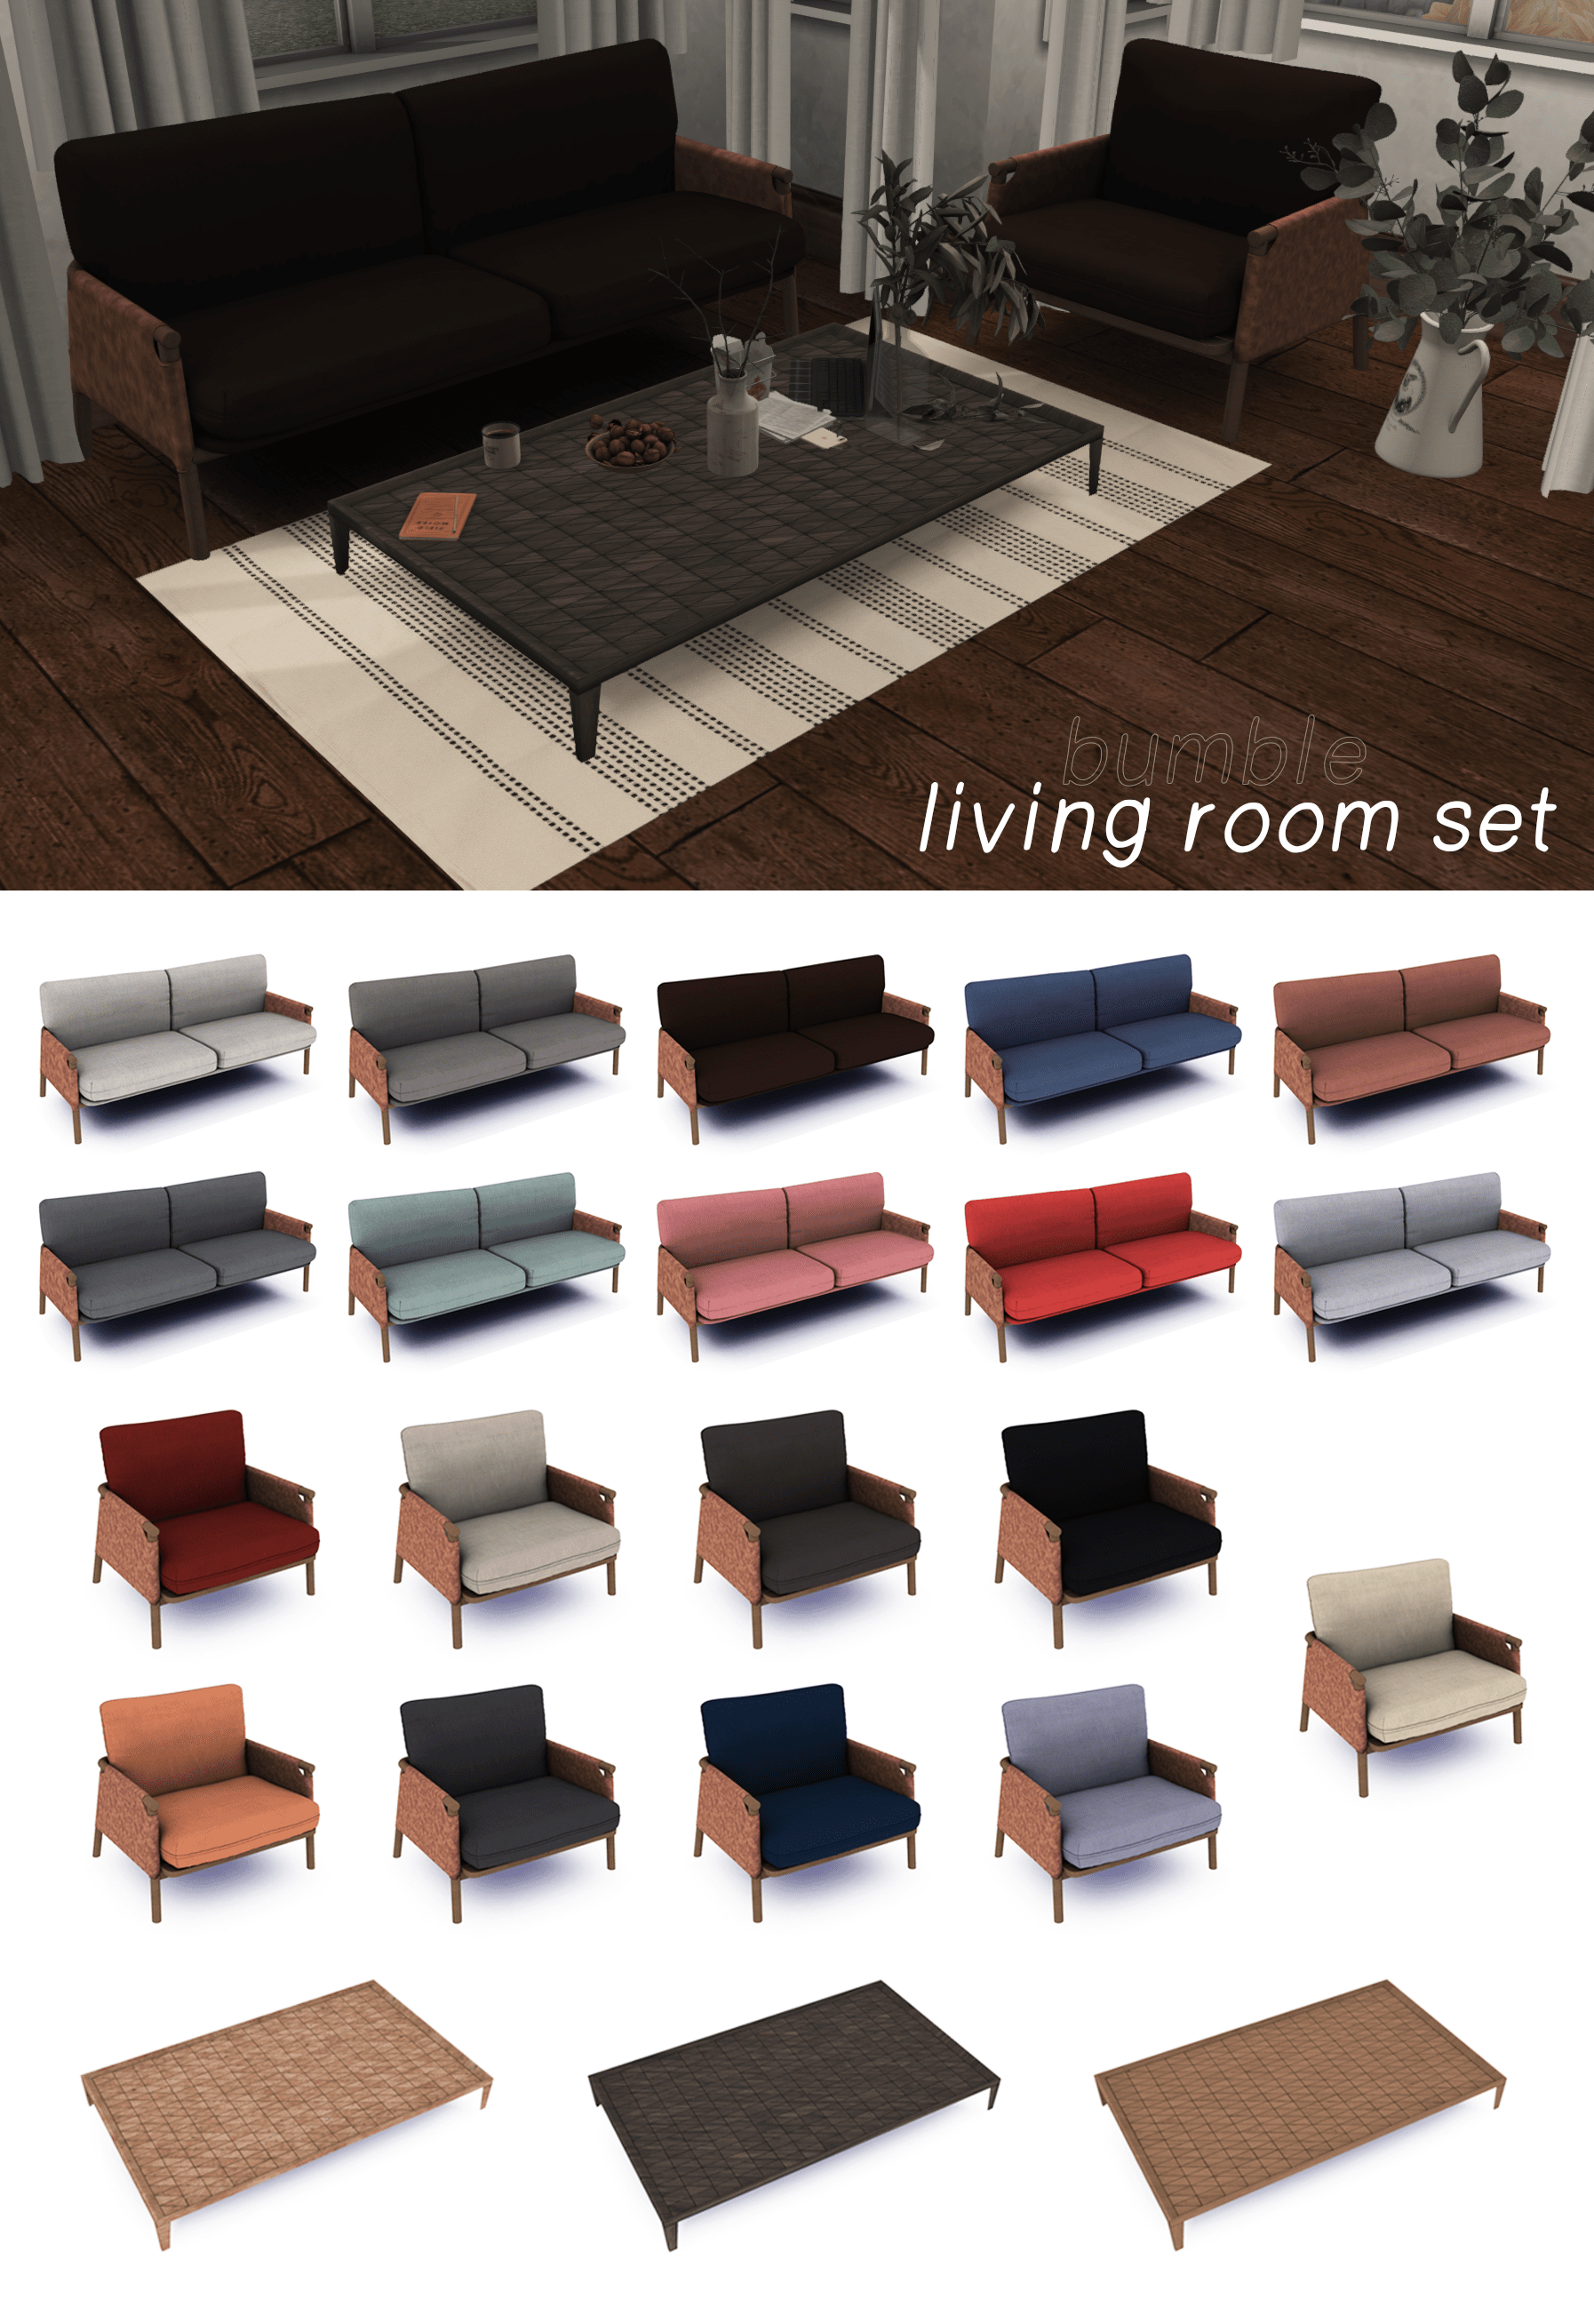 Набор для гостиной Bumble Living Room Set от kaihana для Симс 4